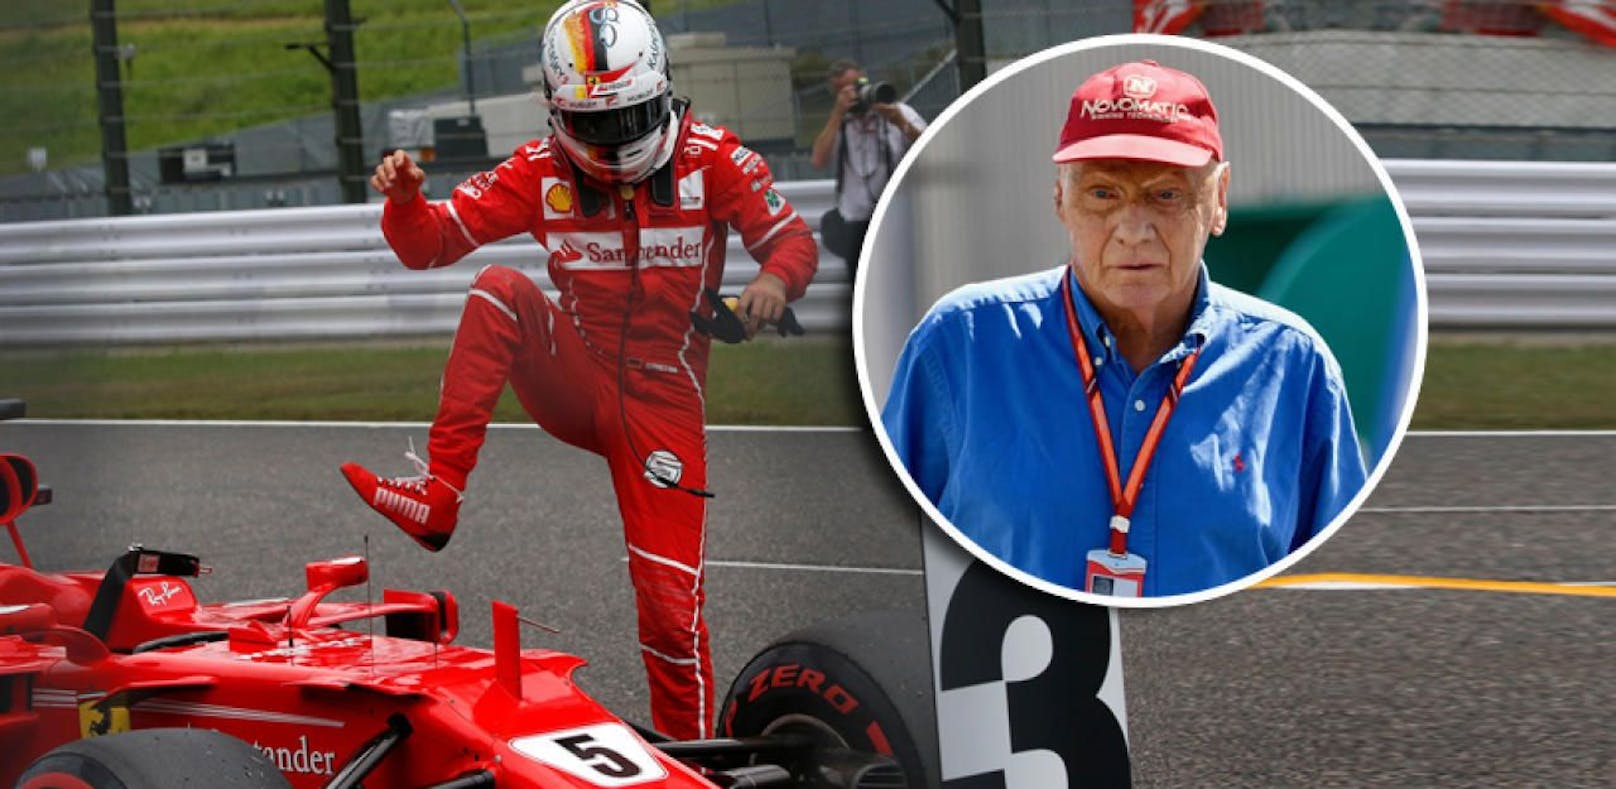 Lauda kritisiert Vettels "Rammstoß" an Hamilton